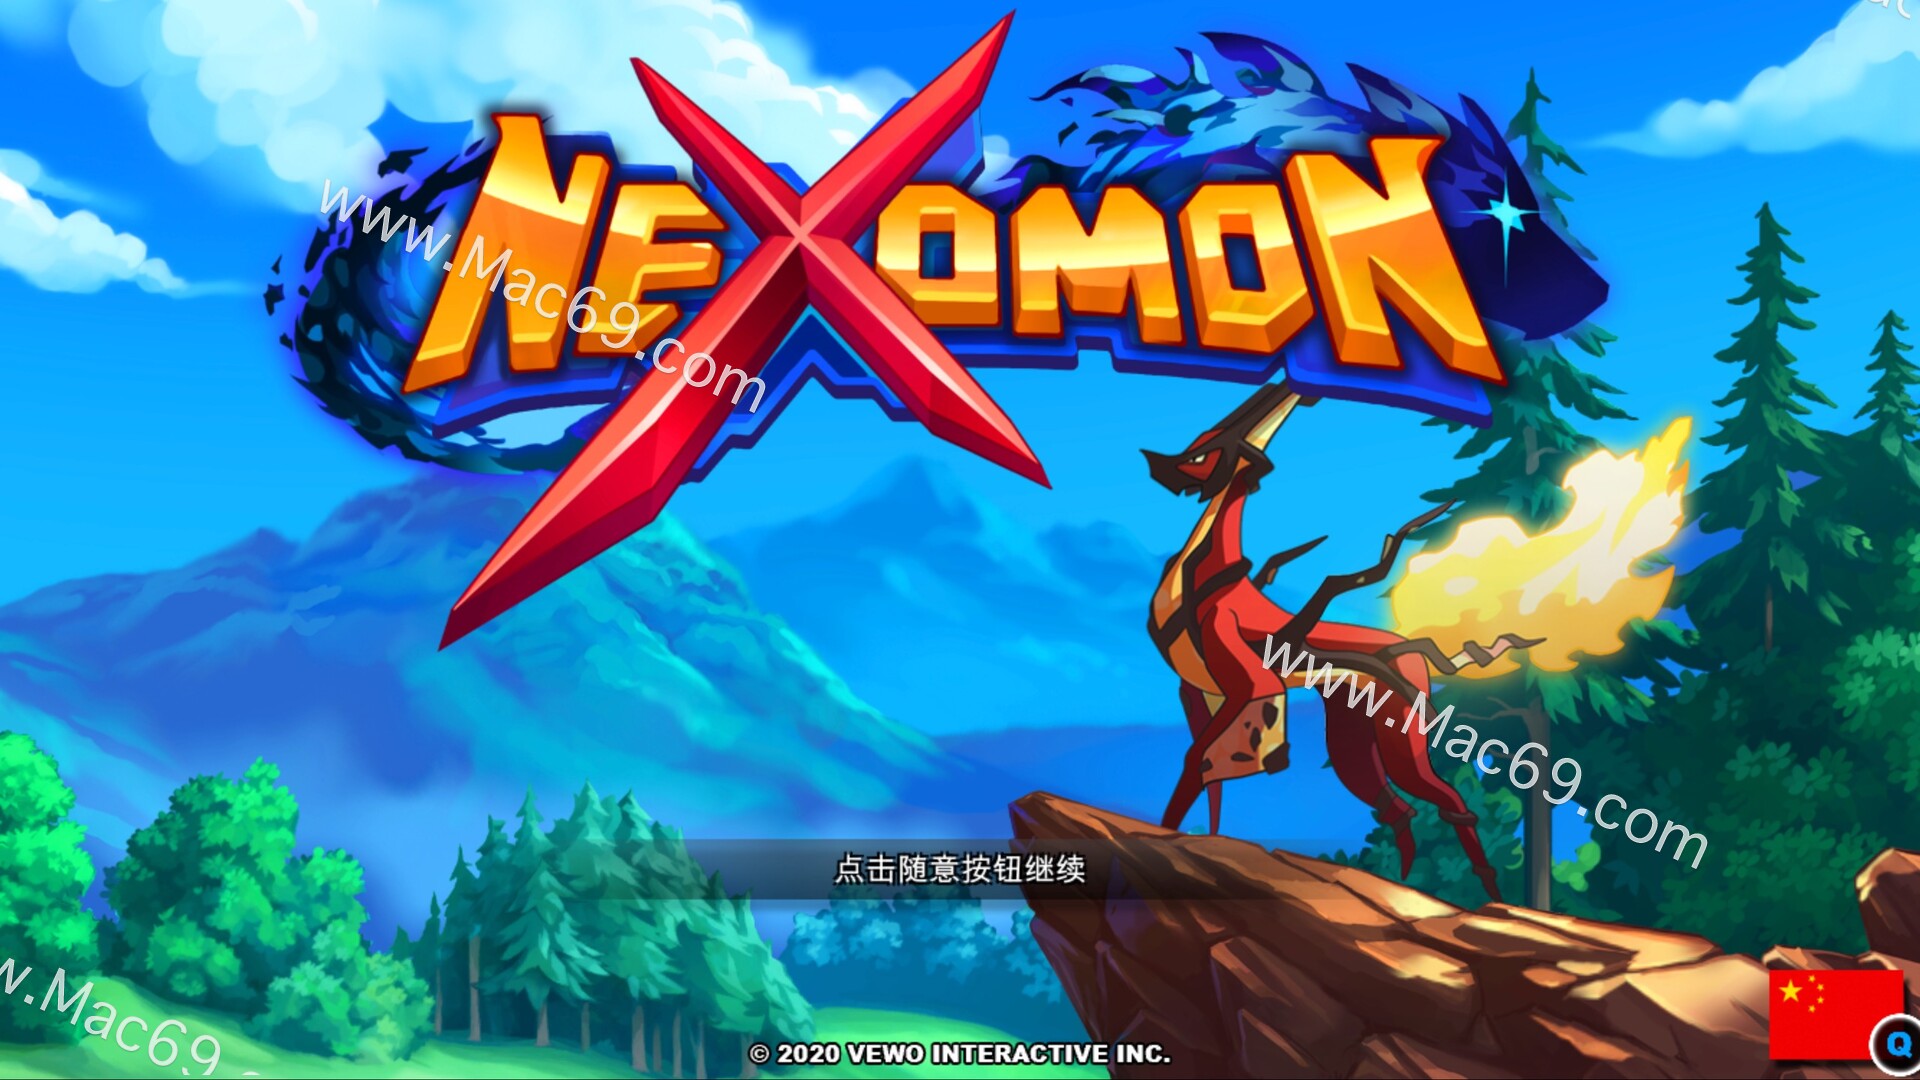 尼可梦Nexomon for Mac(捕获养成类游戏)